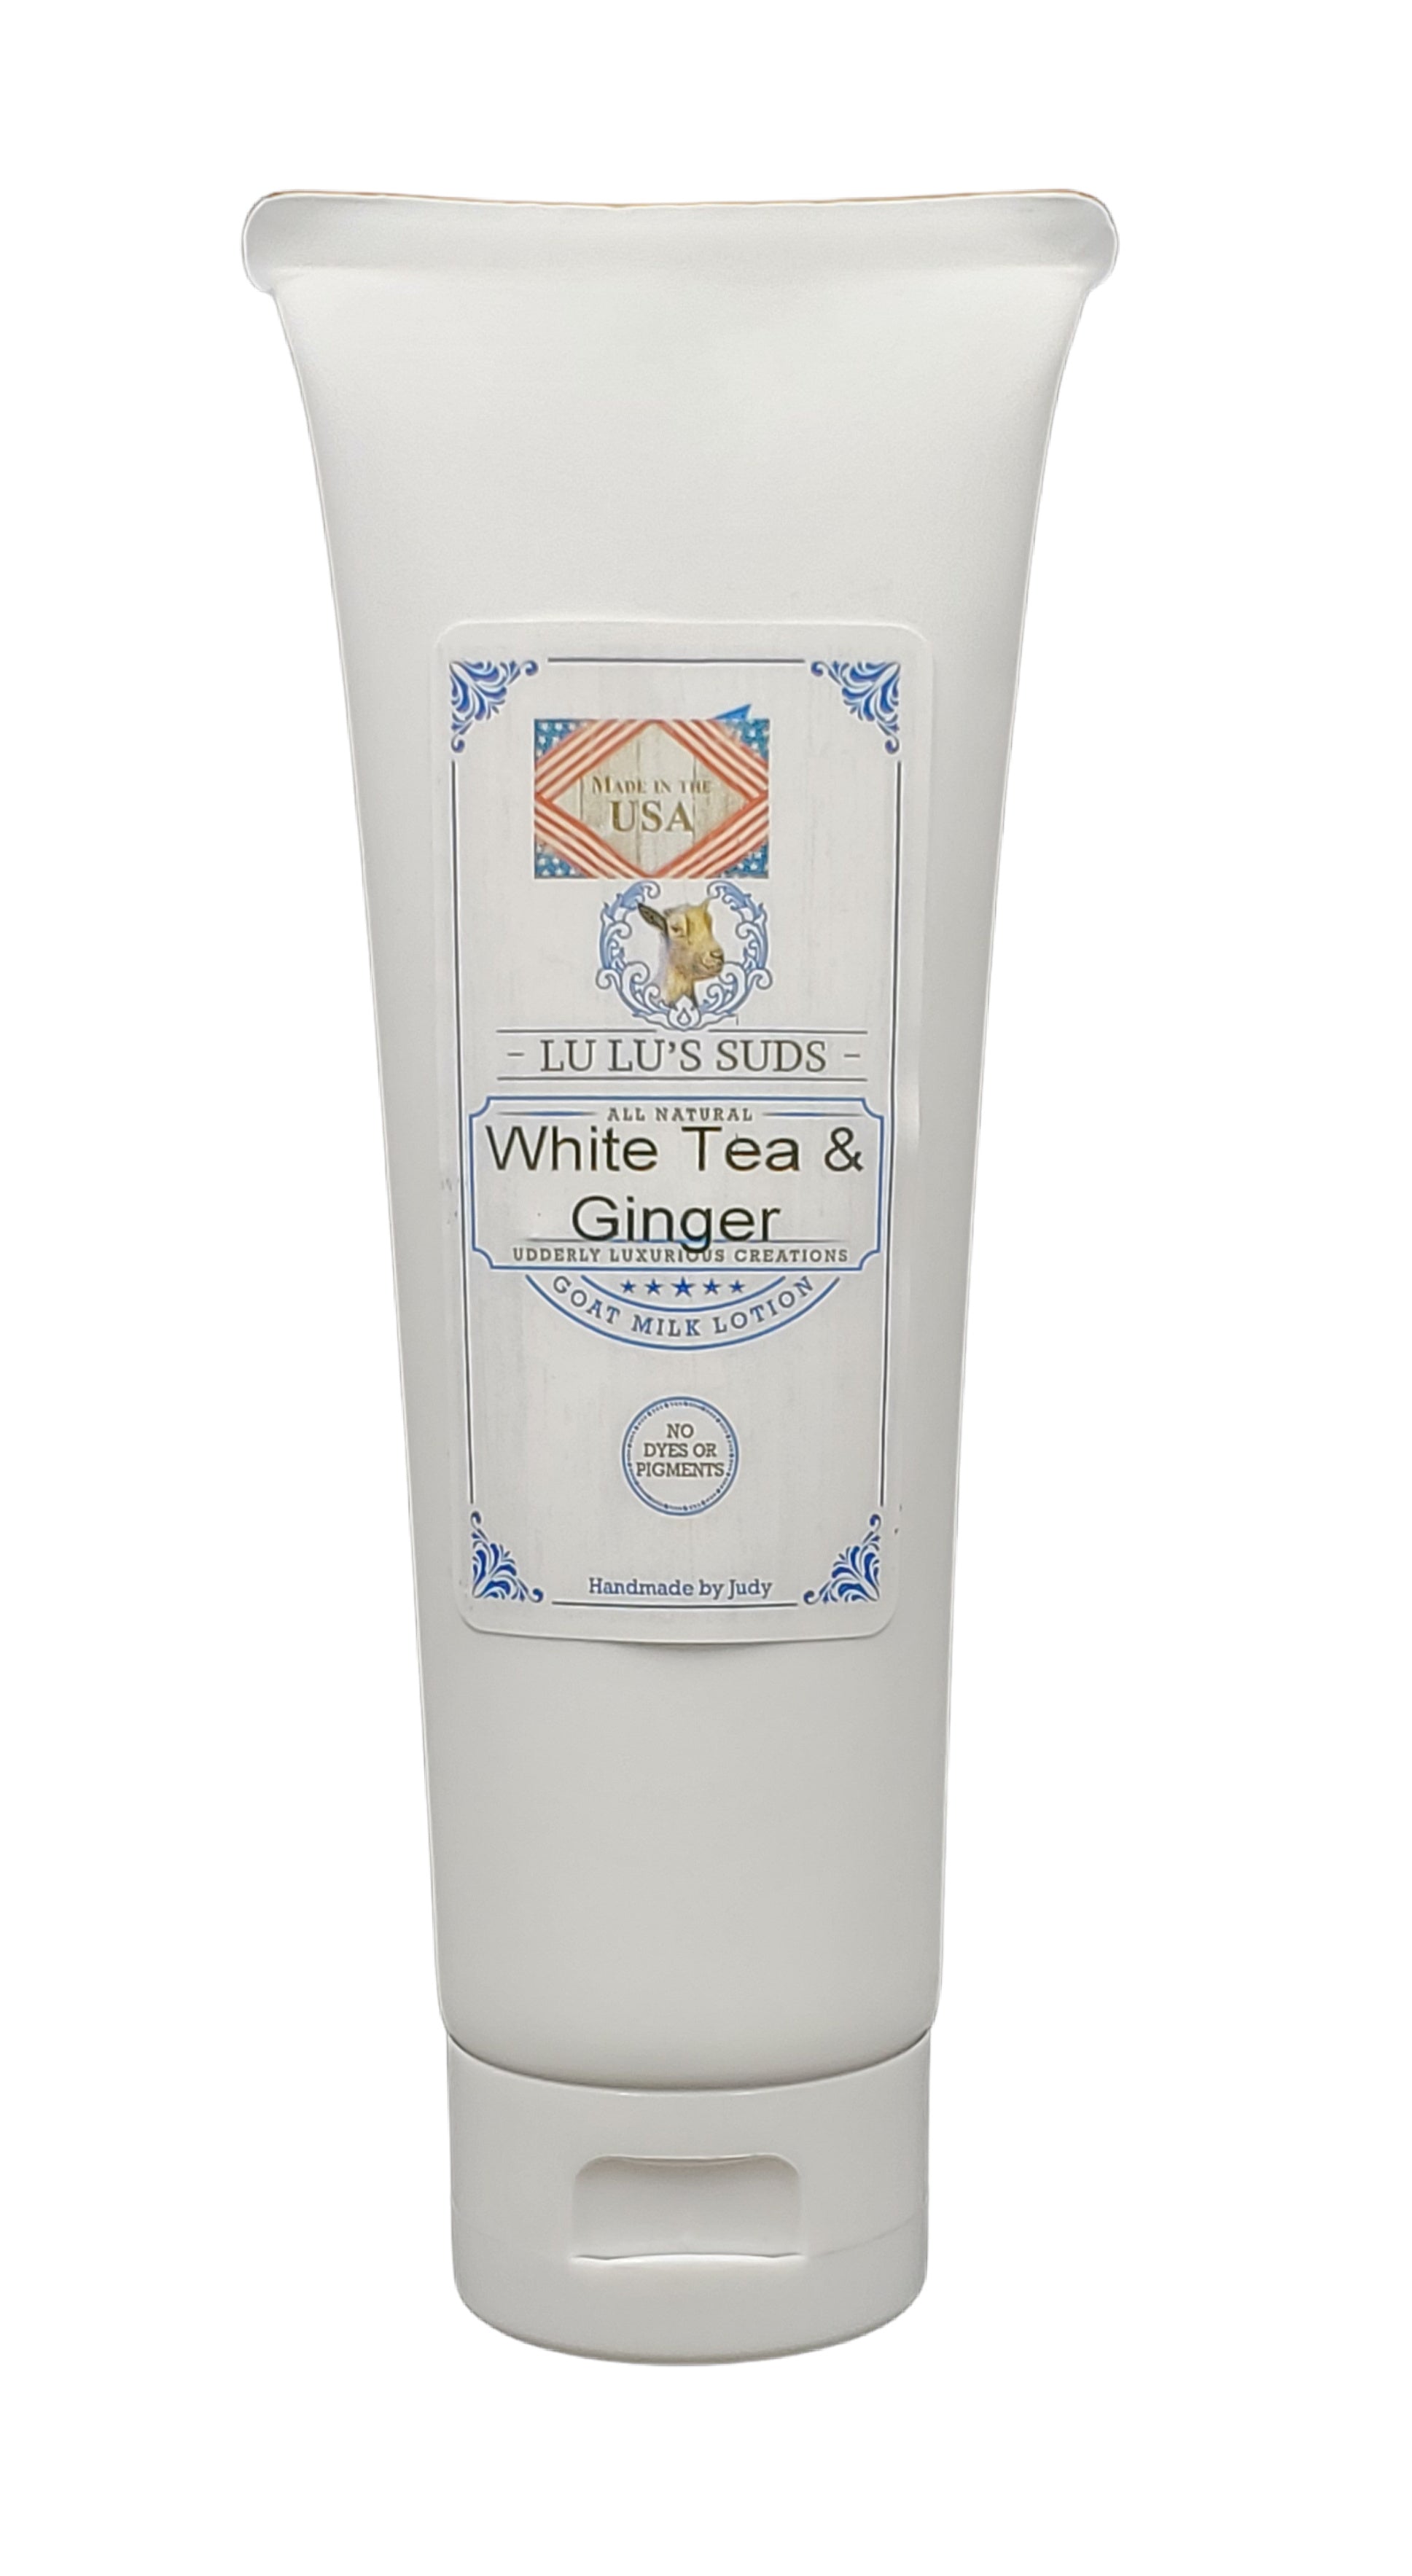 White Tea & Ginger Soap, Lotion, Body Butter, Body Shower Polish Gift Set